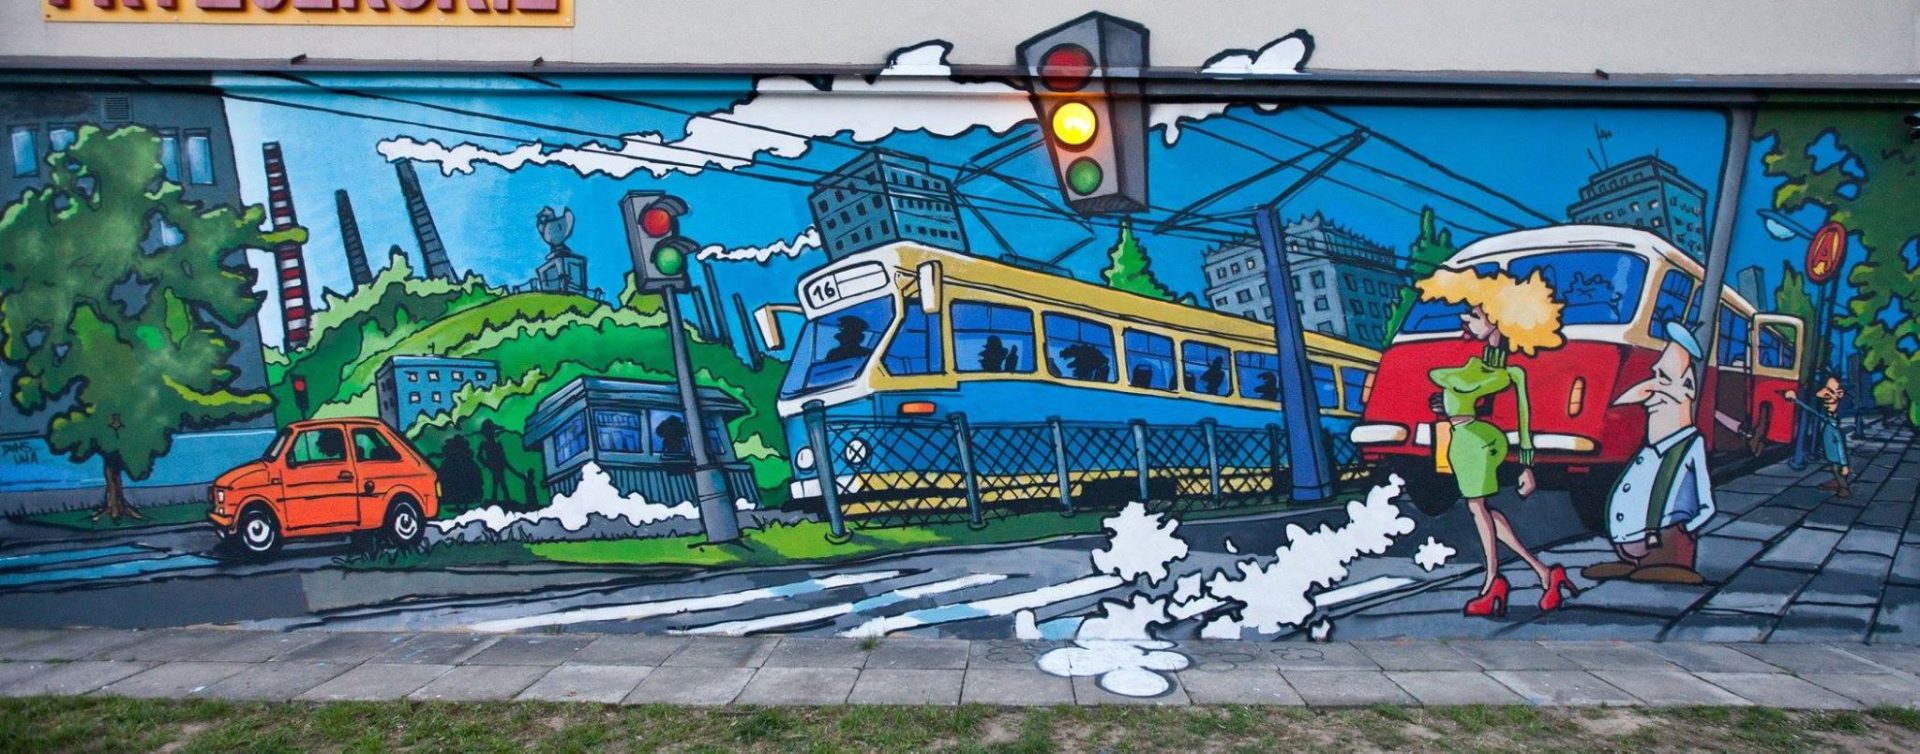 Łukasz Lenda mural